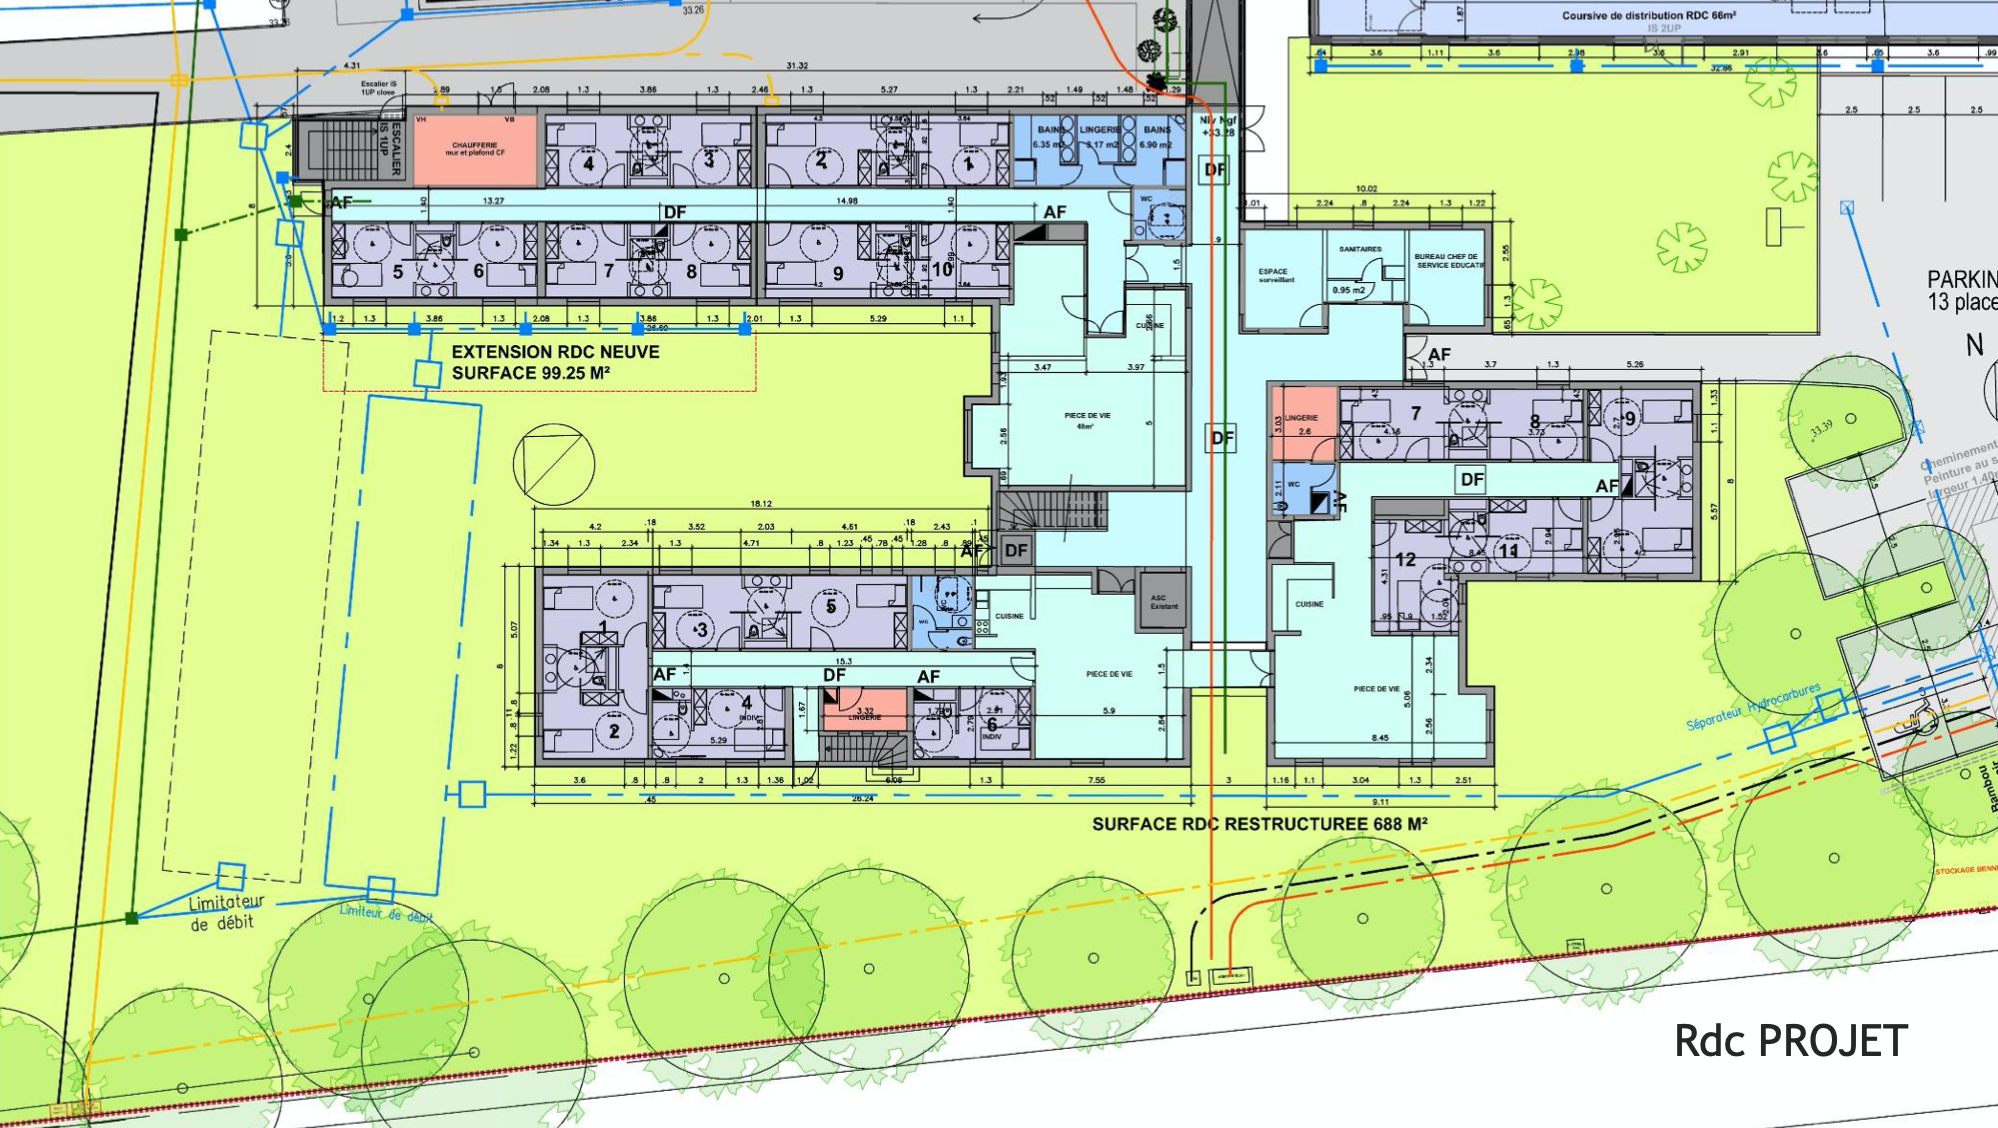 Rez-de-chaussée : 688 m2 restructurés + extension 99,25 m2… soit 787,25 m2